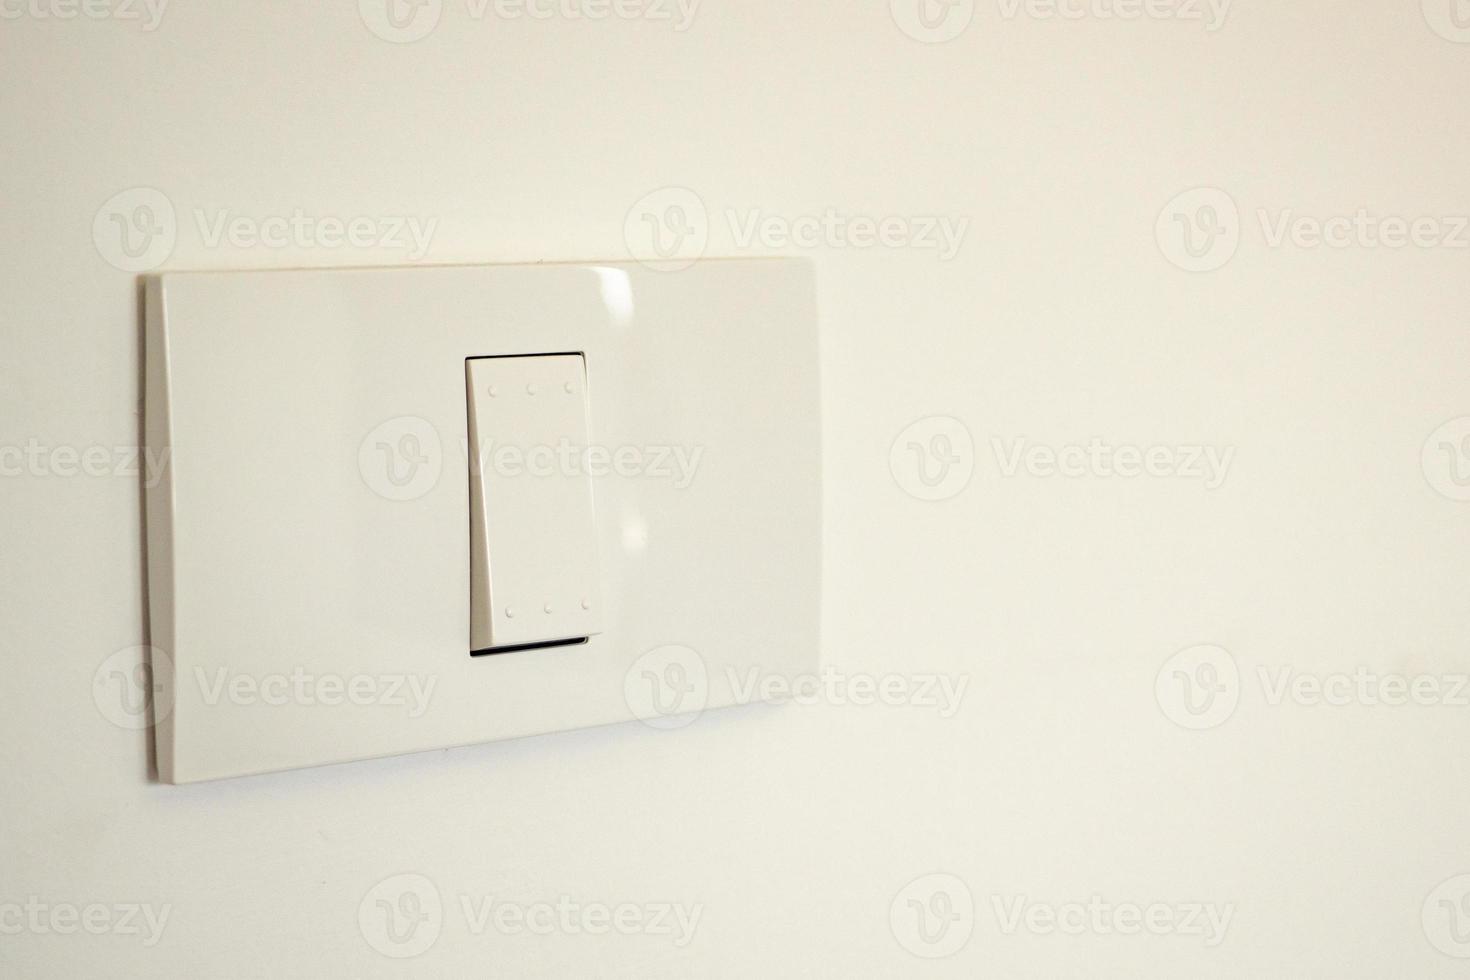 Un interruptor de luz blanca en una pared.